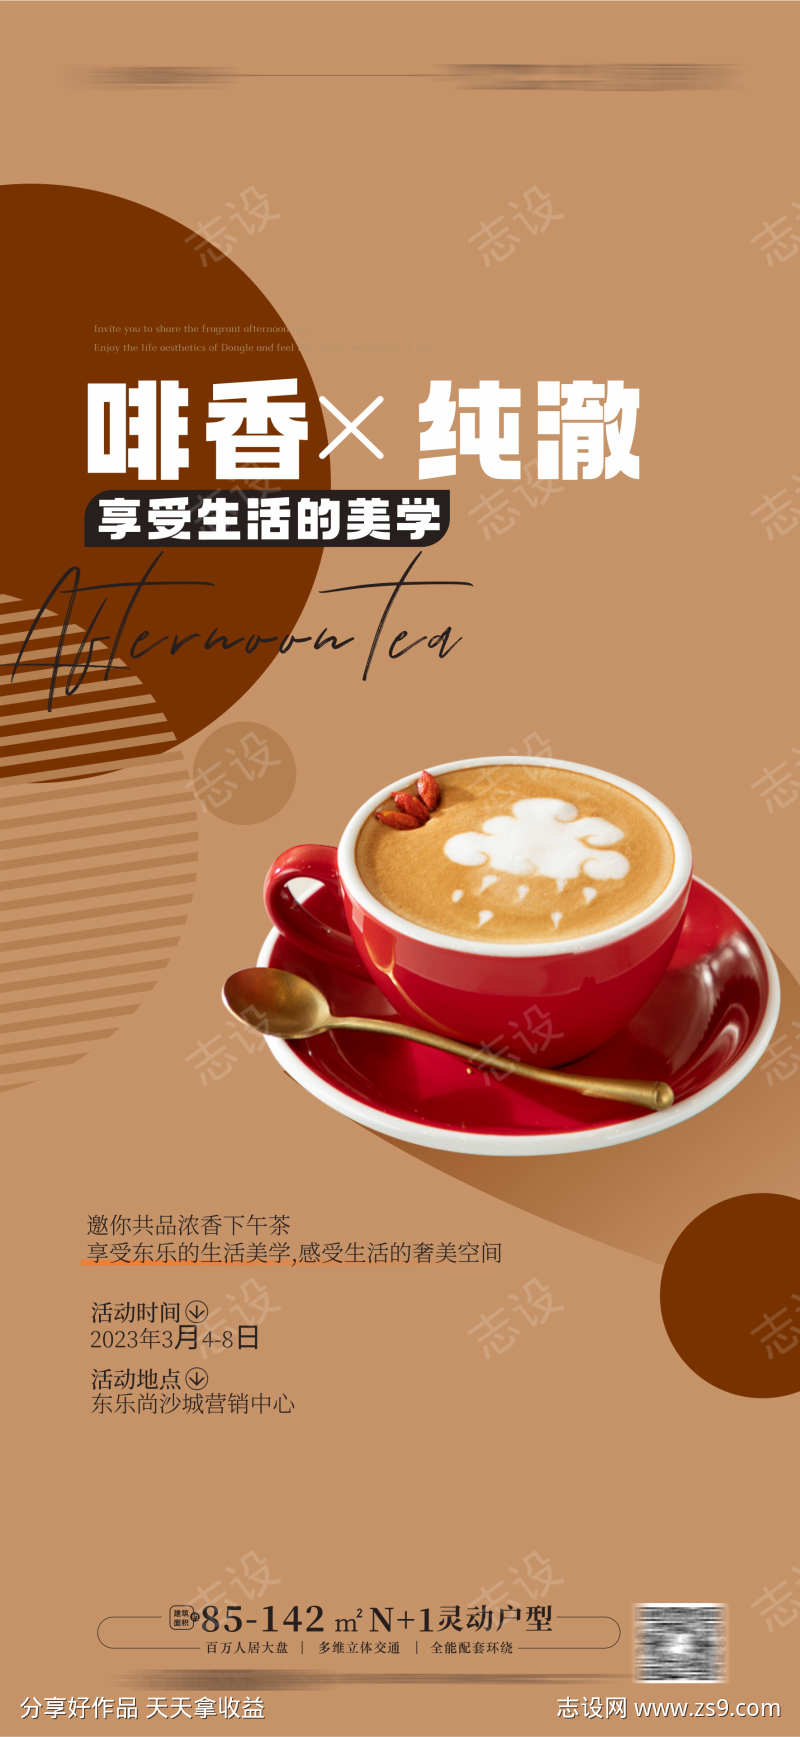 咖啡 下午茶活动海报